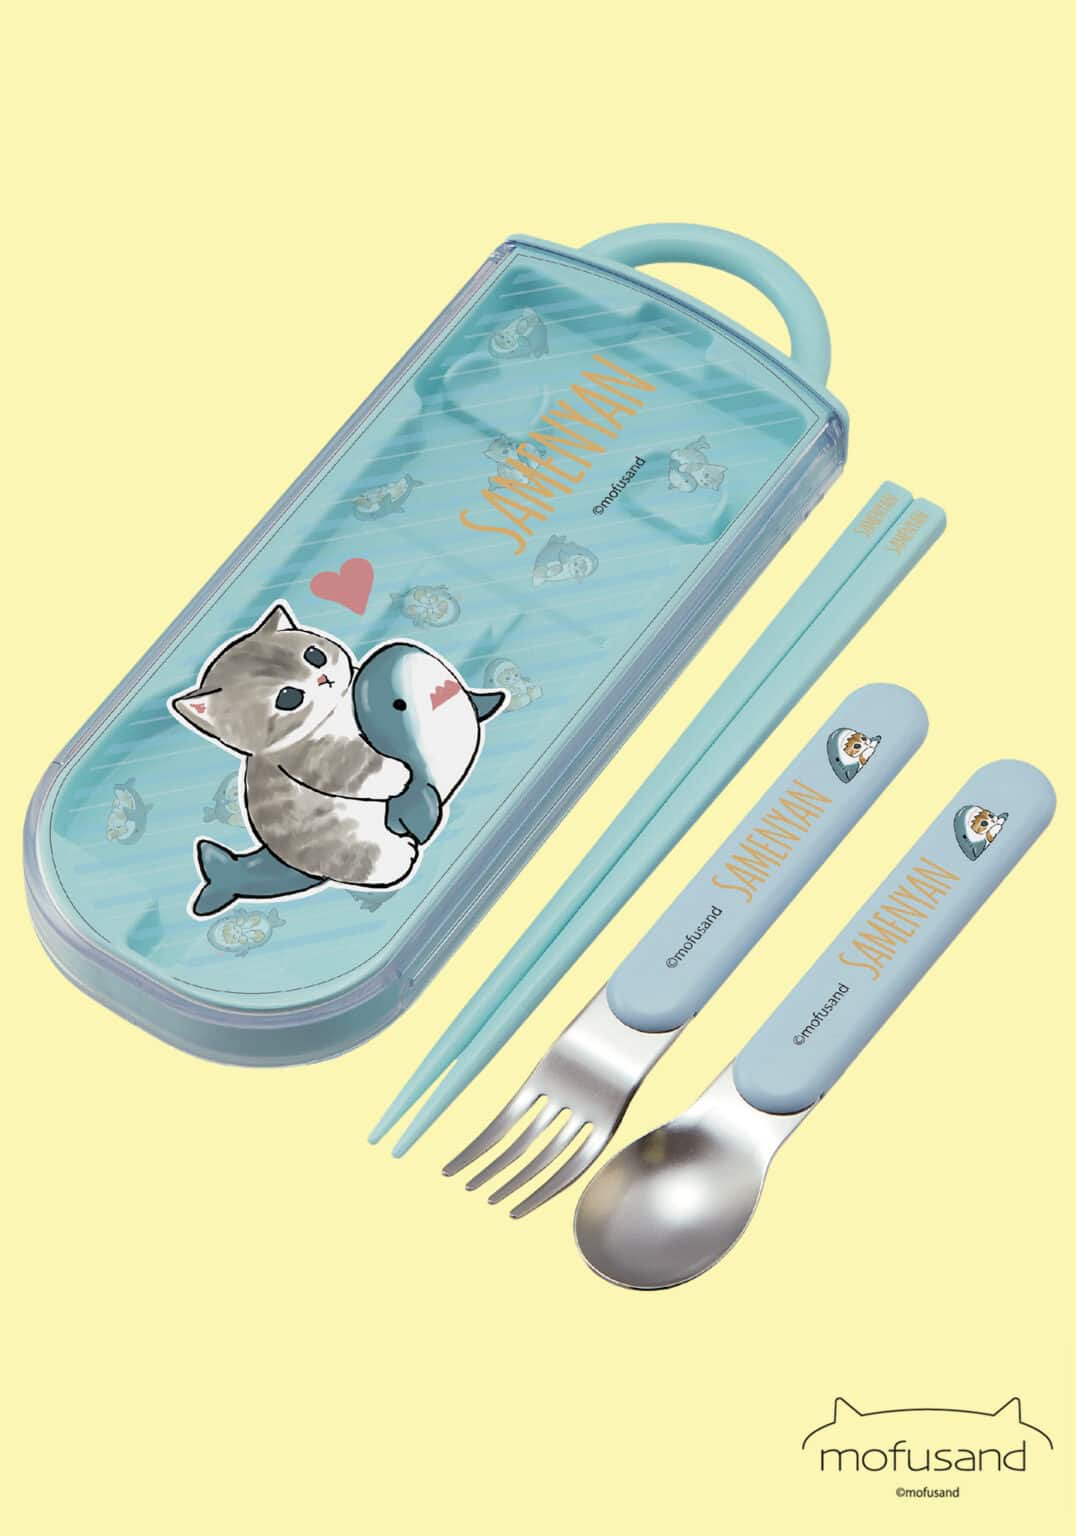 Clever Idiots Mofusand Cat Utensil Set: Chopsticks, Fork, Spoon Kawaii Gifts 4973307640933